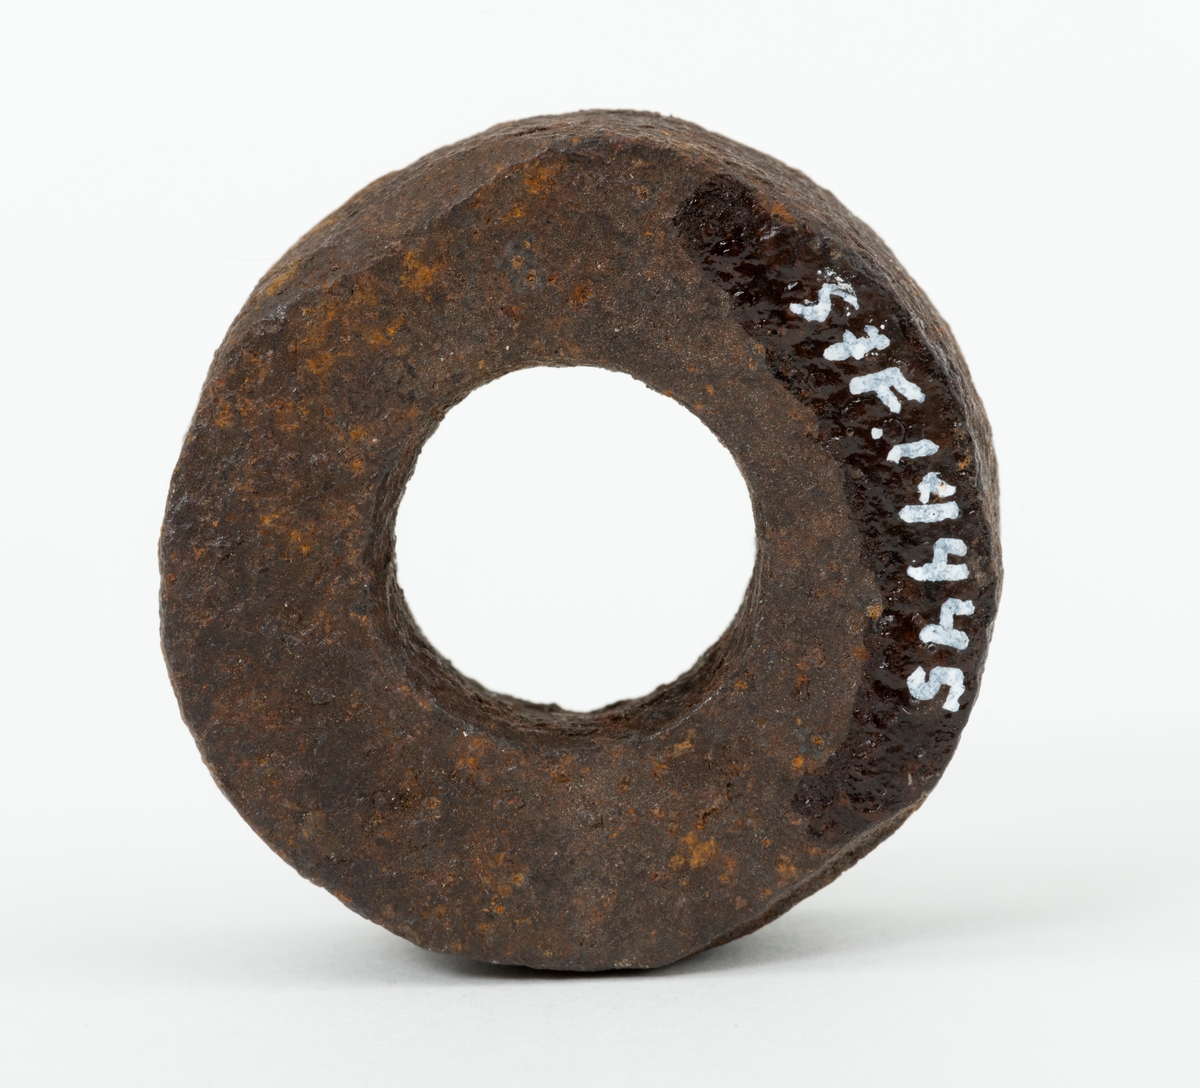 Skive – en jernring, brukt som mellomlegg ved et sammenføyingspunkt på et redskap eller en teknisk installasjon. Skiva eller ringen har en utvendig diameter på 4,2 centimeter. Den innvendige diameteren er 1,9 centimeter. Skiva er drøyt 1,5 centimeter tjukk. Den veier 116 gram.